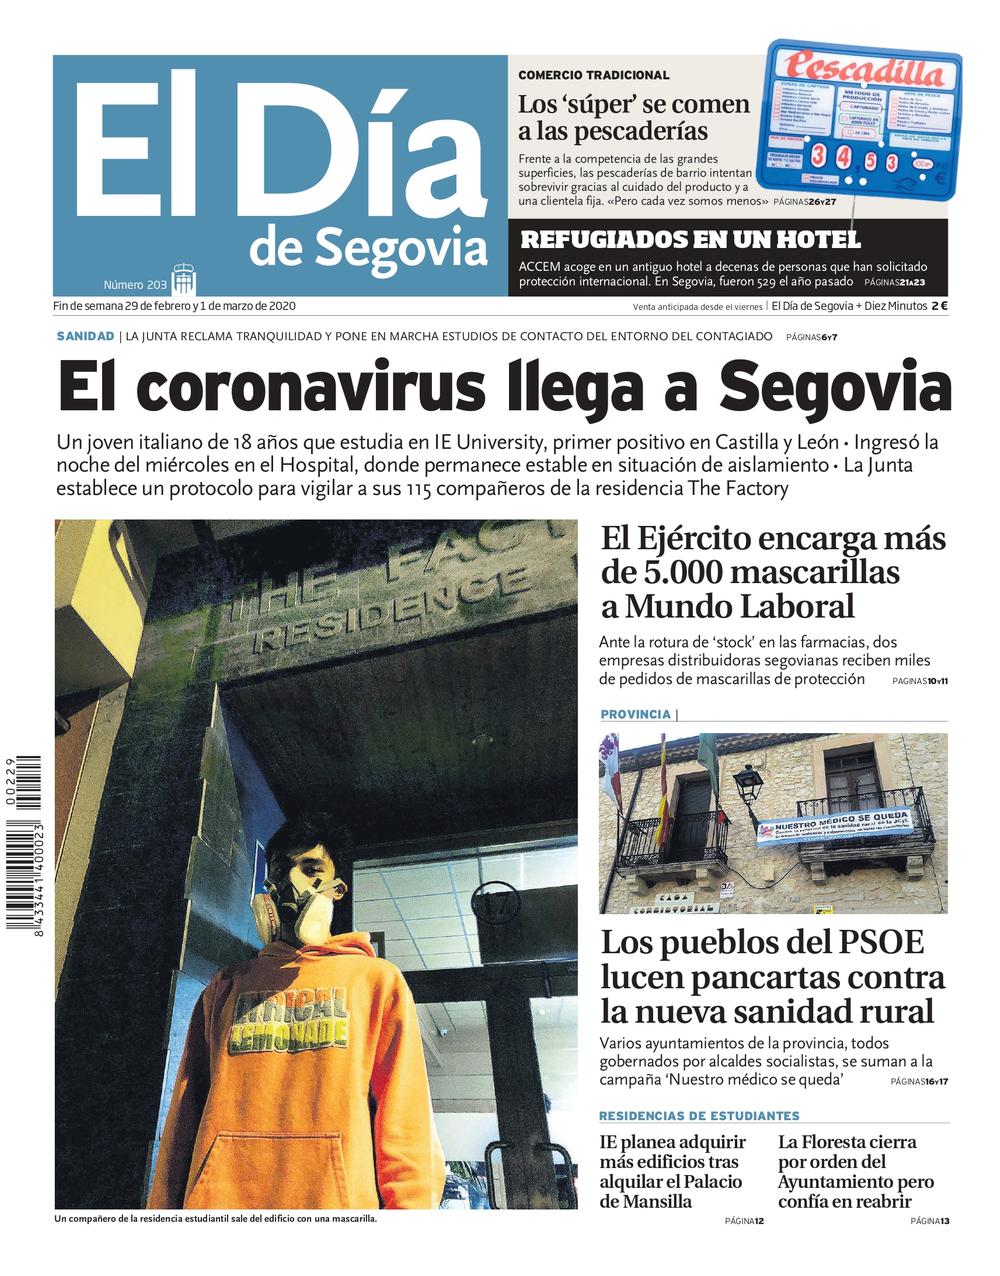  Un repaso a la pandemia en Segovia a través de las portadas de El Día